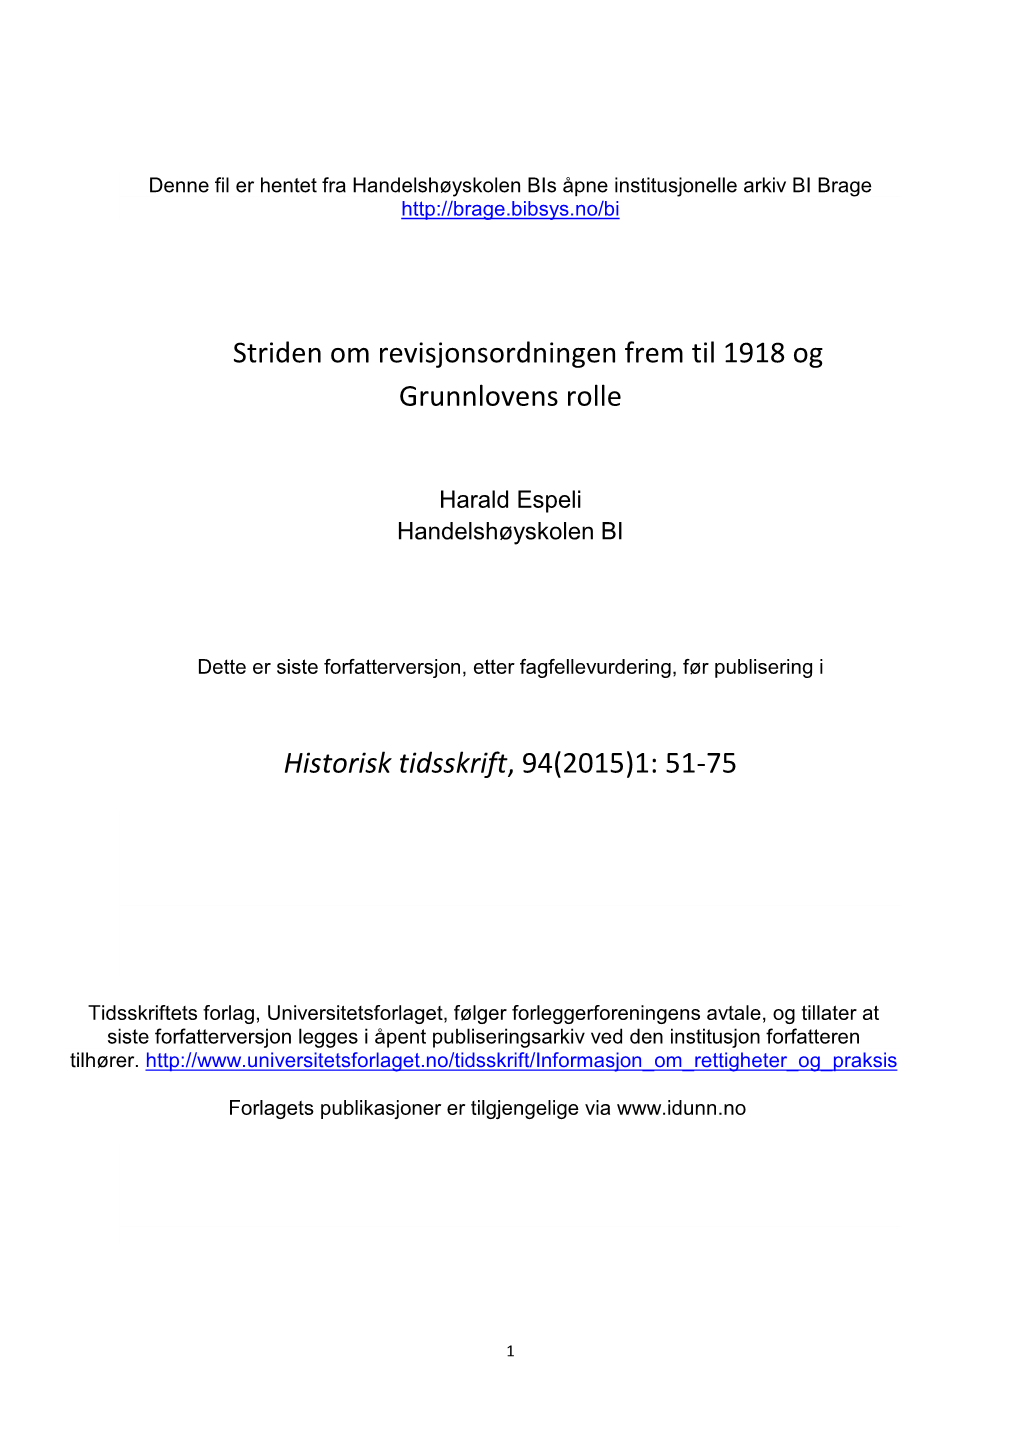 Striden Om Revisjonsordningen Frem Til 1918 Og Grunnlovens Rolle Historisk Tidsskrift, 94(2015)1: 51-75